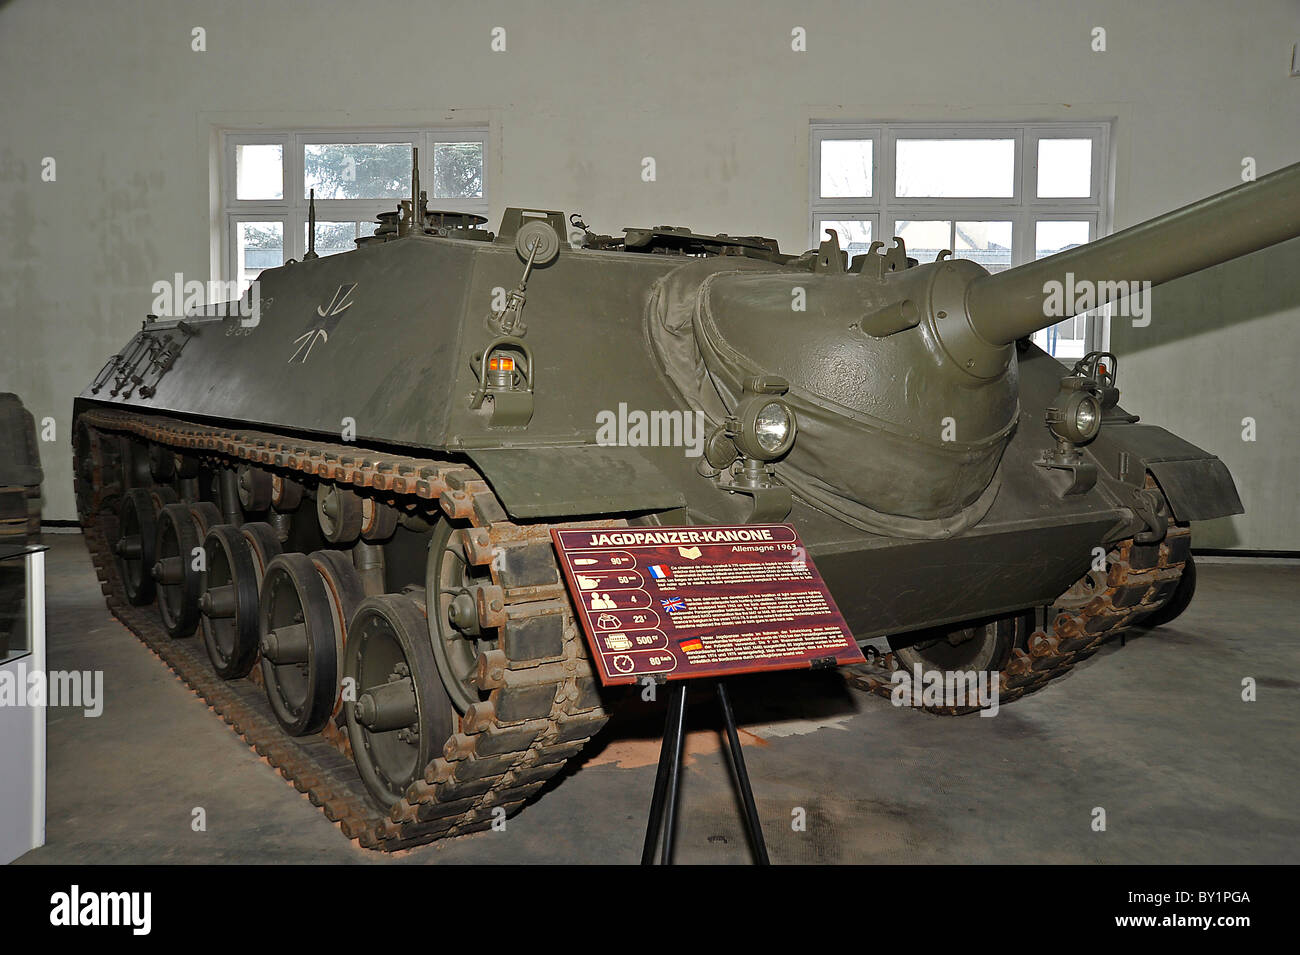 German tank display at Saumur tank museum Stock Photo